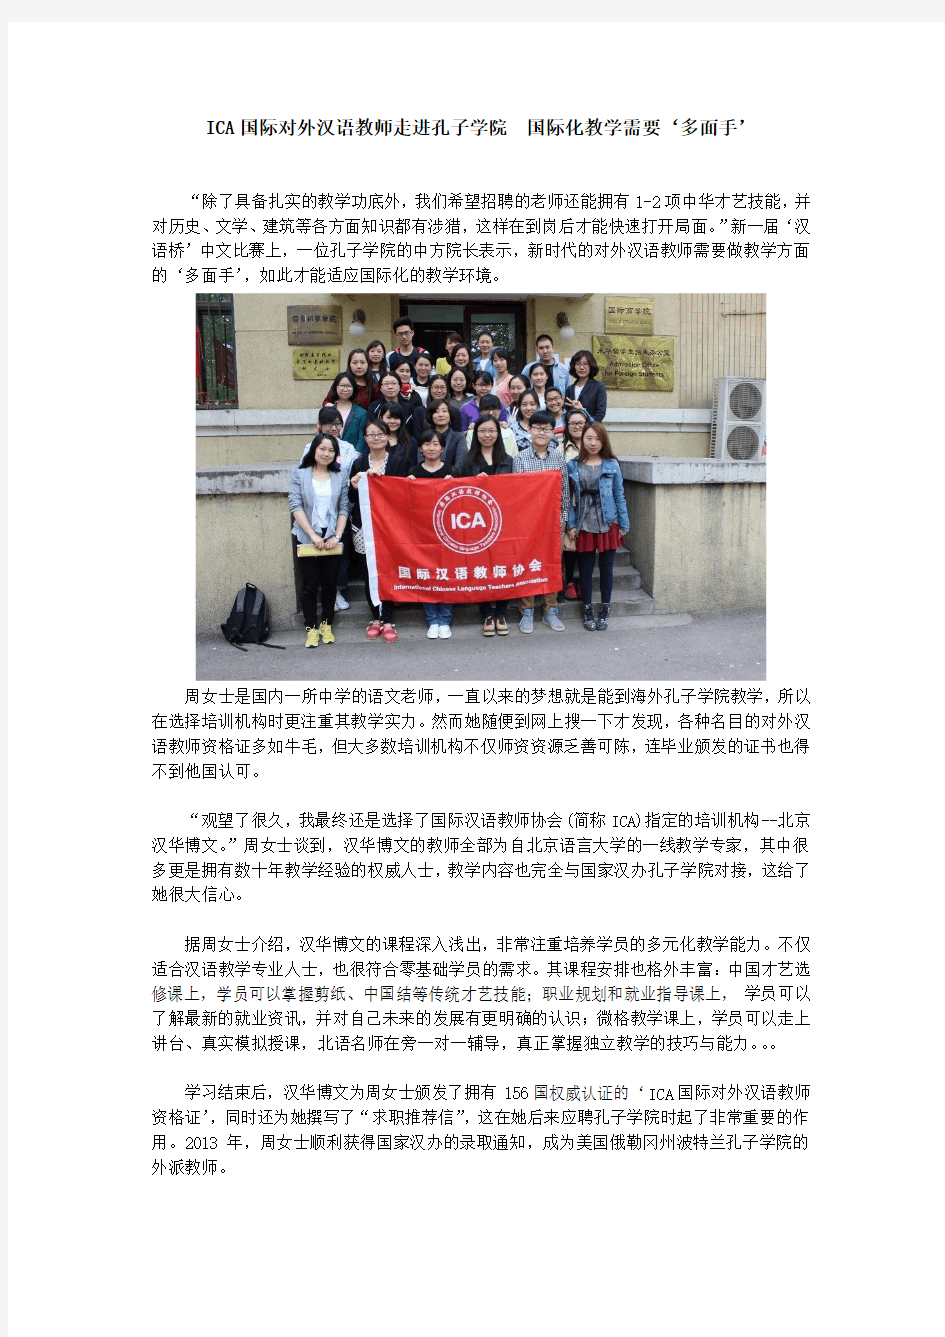 ICA国际对外汉语教师走进孔子学院  国际化教学需要‘多面手’